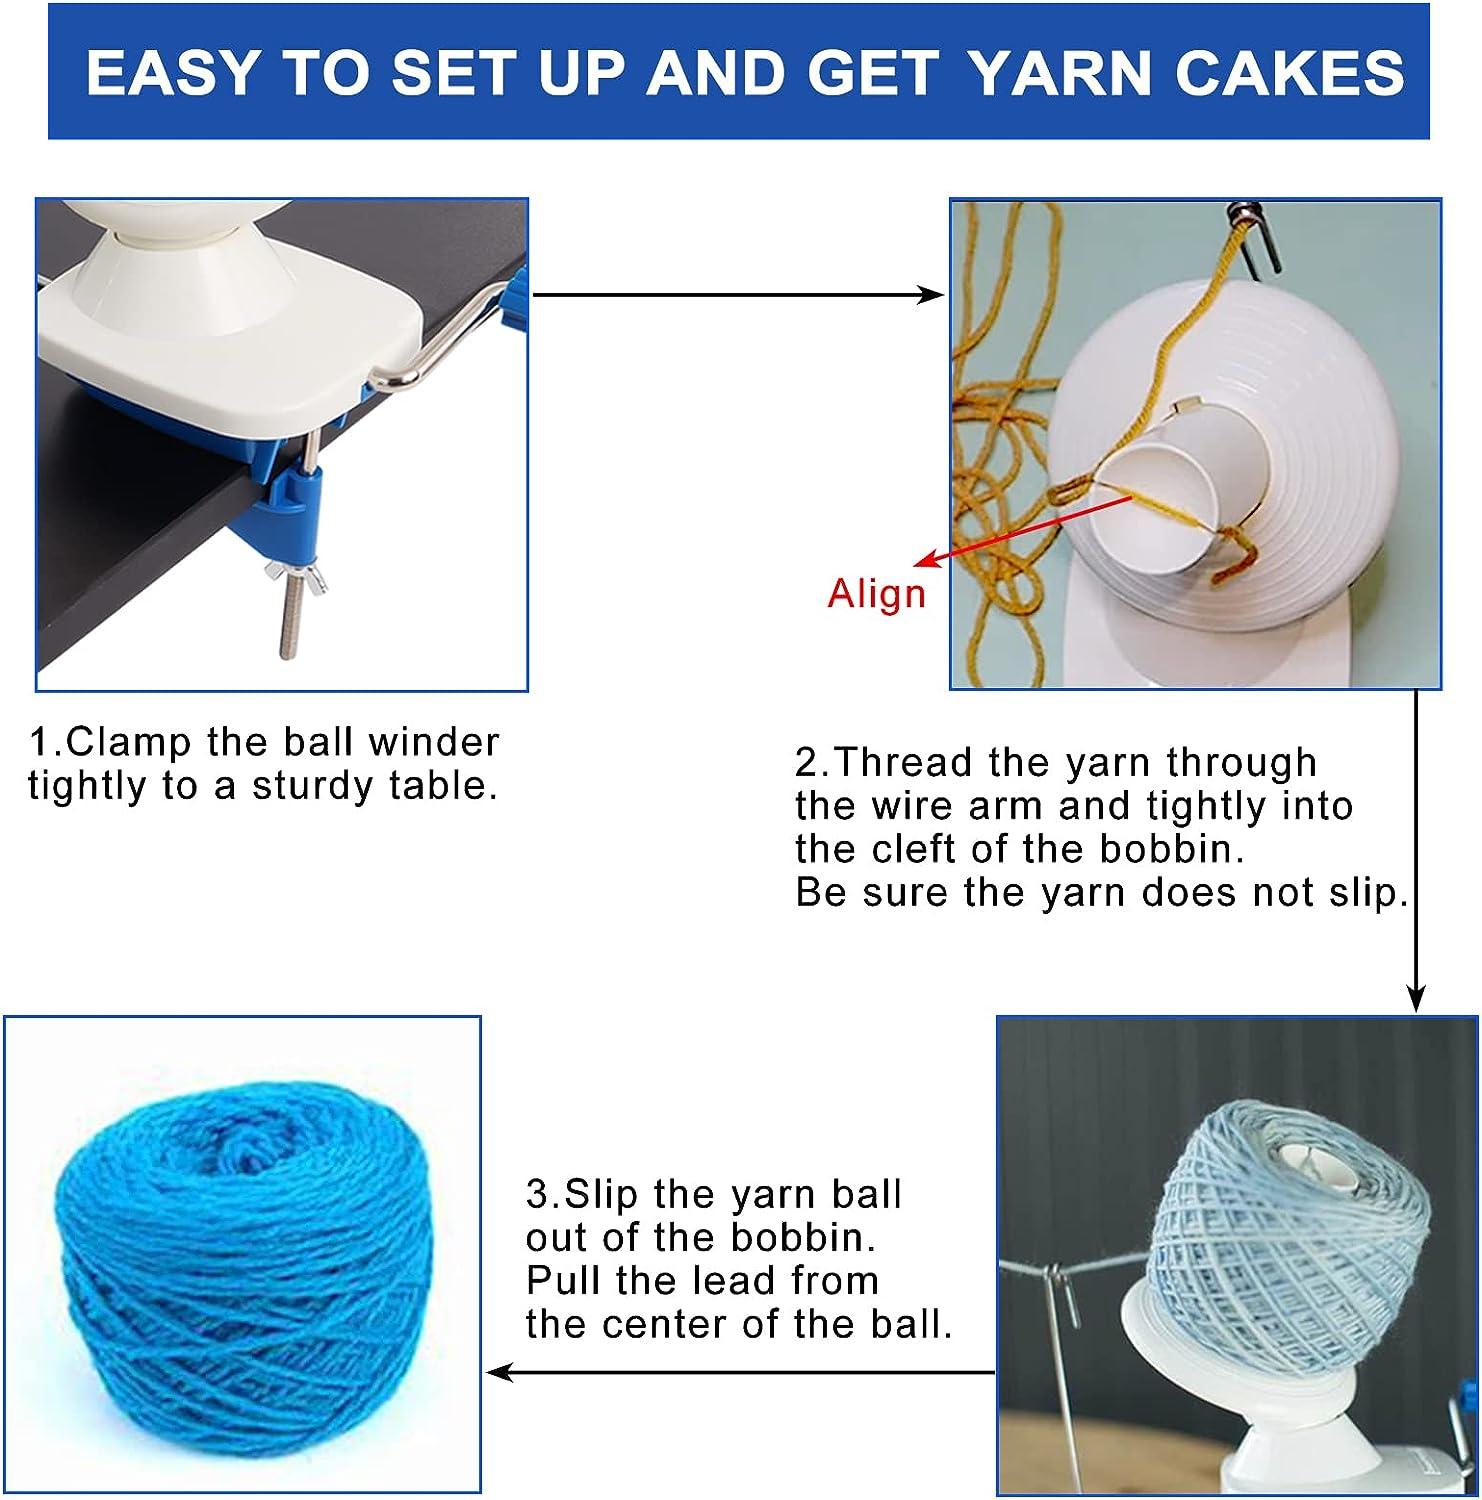 Yarn Ball Winder with Stitch Knitting Needles,Yarn Swift and Ball